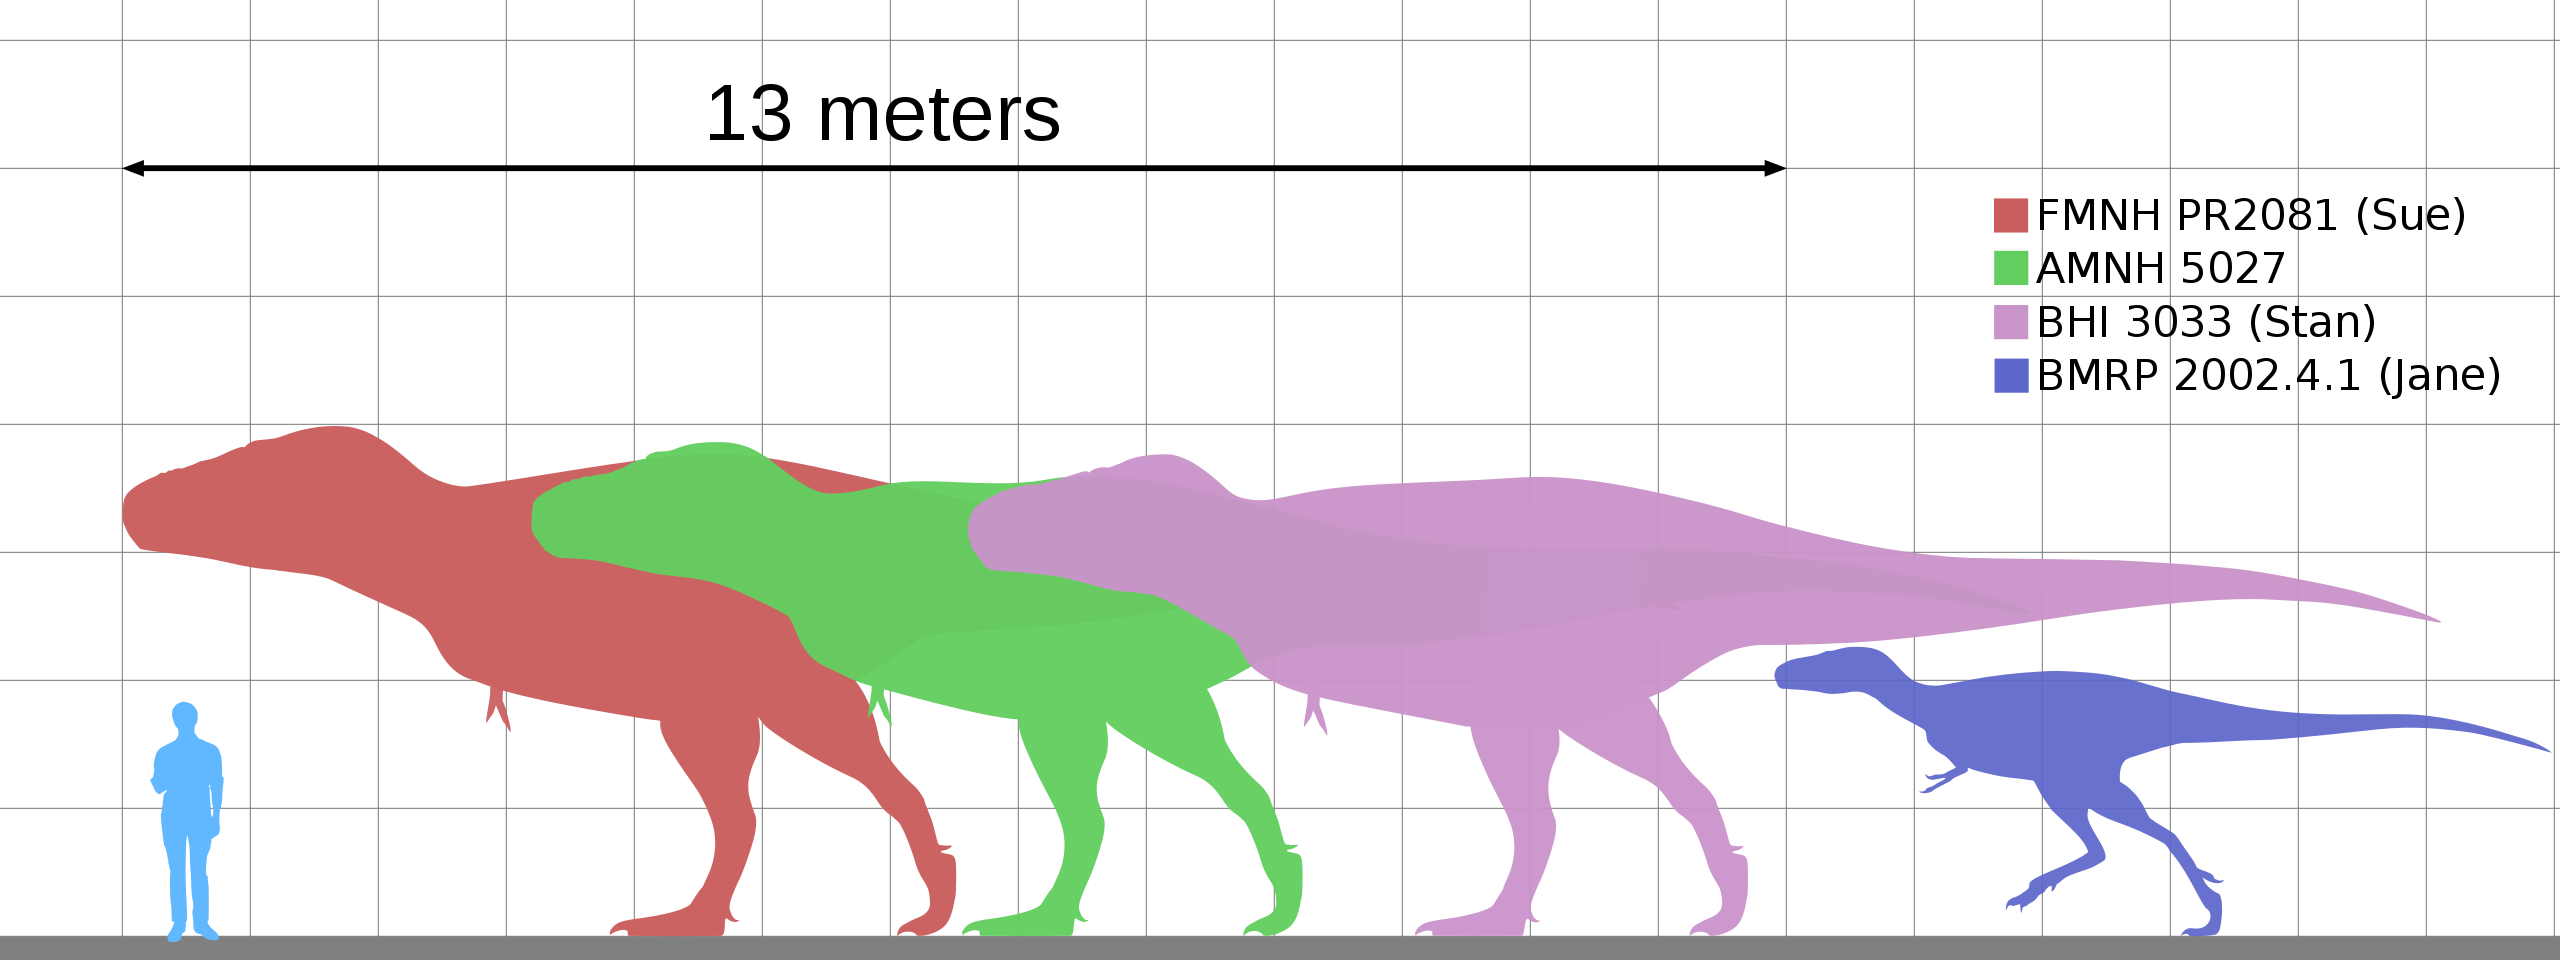 „Stan“ (fialová silueta) byl dospělým tyranosaurem, dosahujícím délky asi 11,7 metru a hmotnosti přes 7 tun. Nebyl tedy tak velký, jako obří exempláře „Sue“ (červená silueta) nebo „Scotty“. Přesto prvního zmíněného jedince vydraženou částkou výrazně 